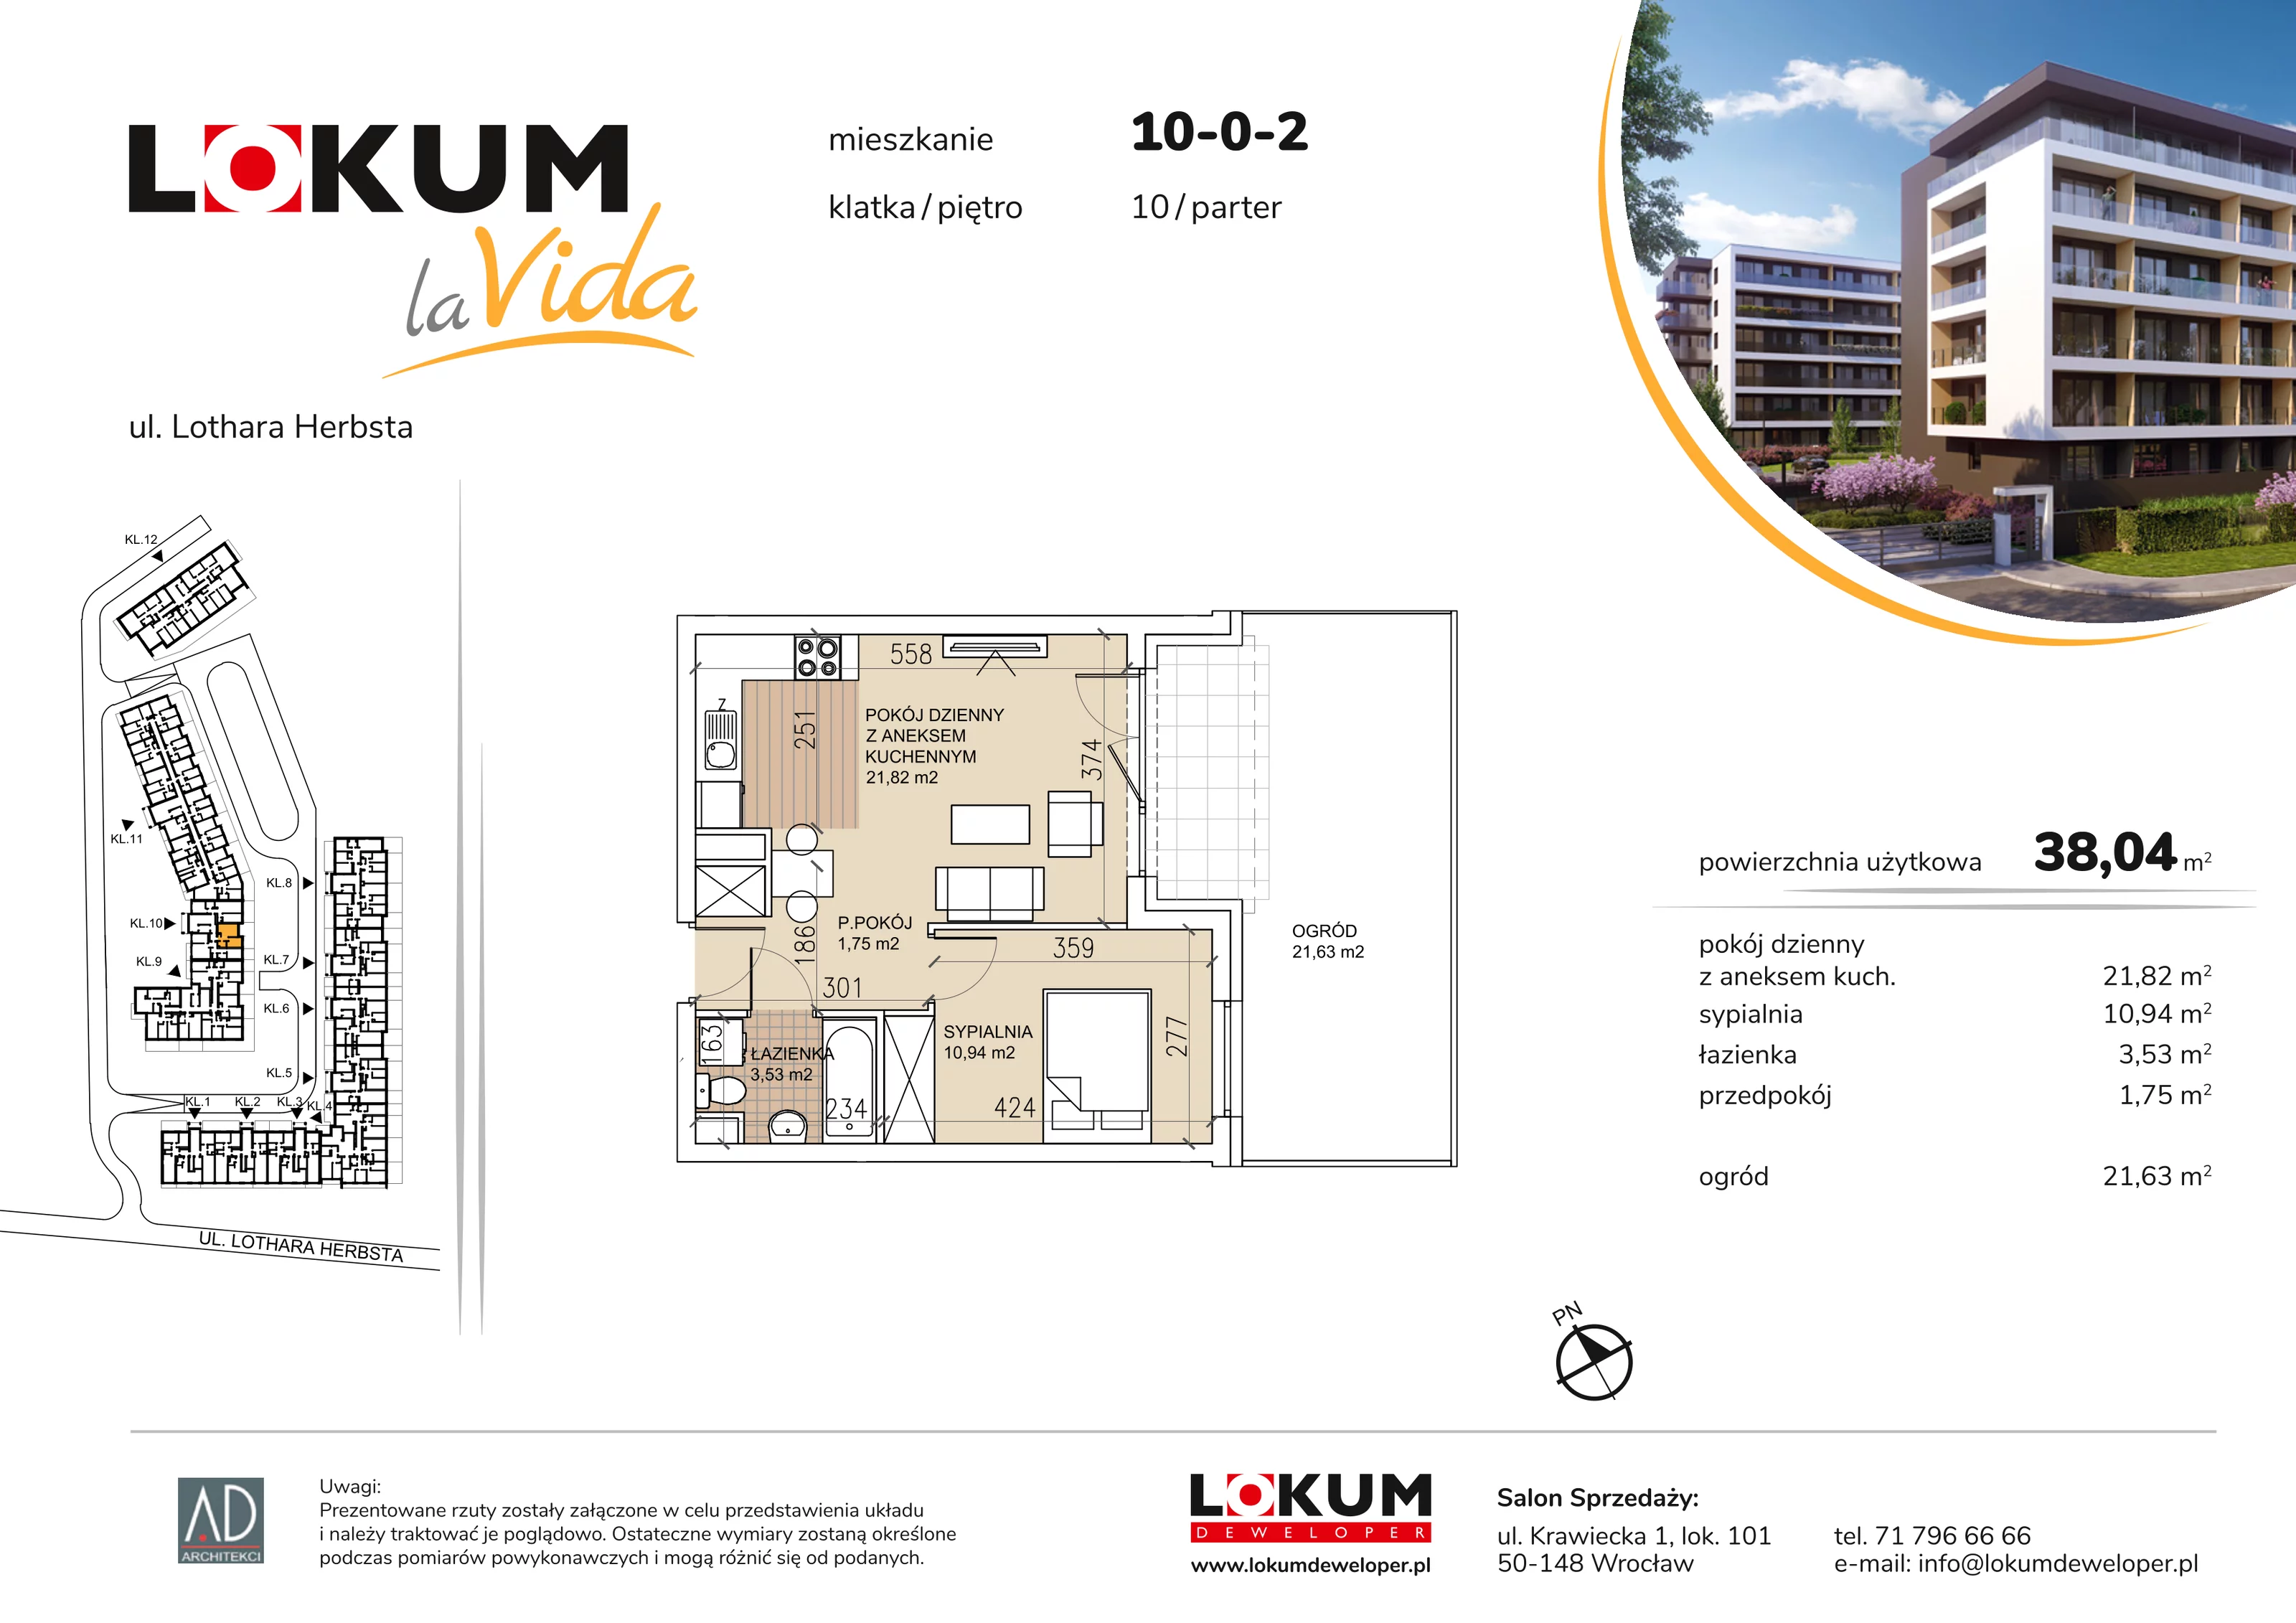 Mieszkanie 38,04 m², parter, oferta nr 10-0-2, Lokum la Vida, Wrocław, Sołtysowice, ul. Lothara Herbsta